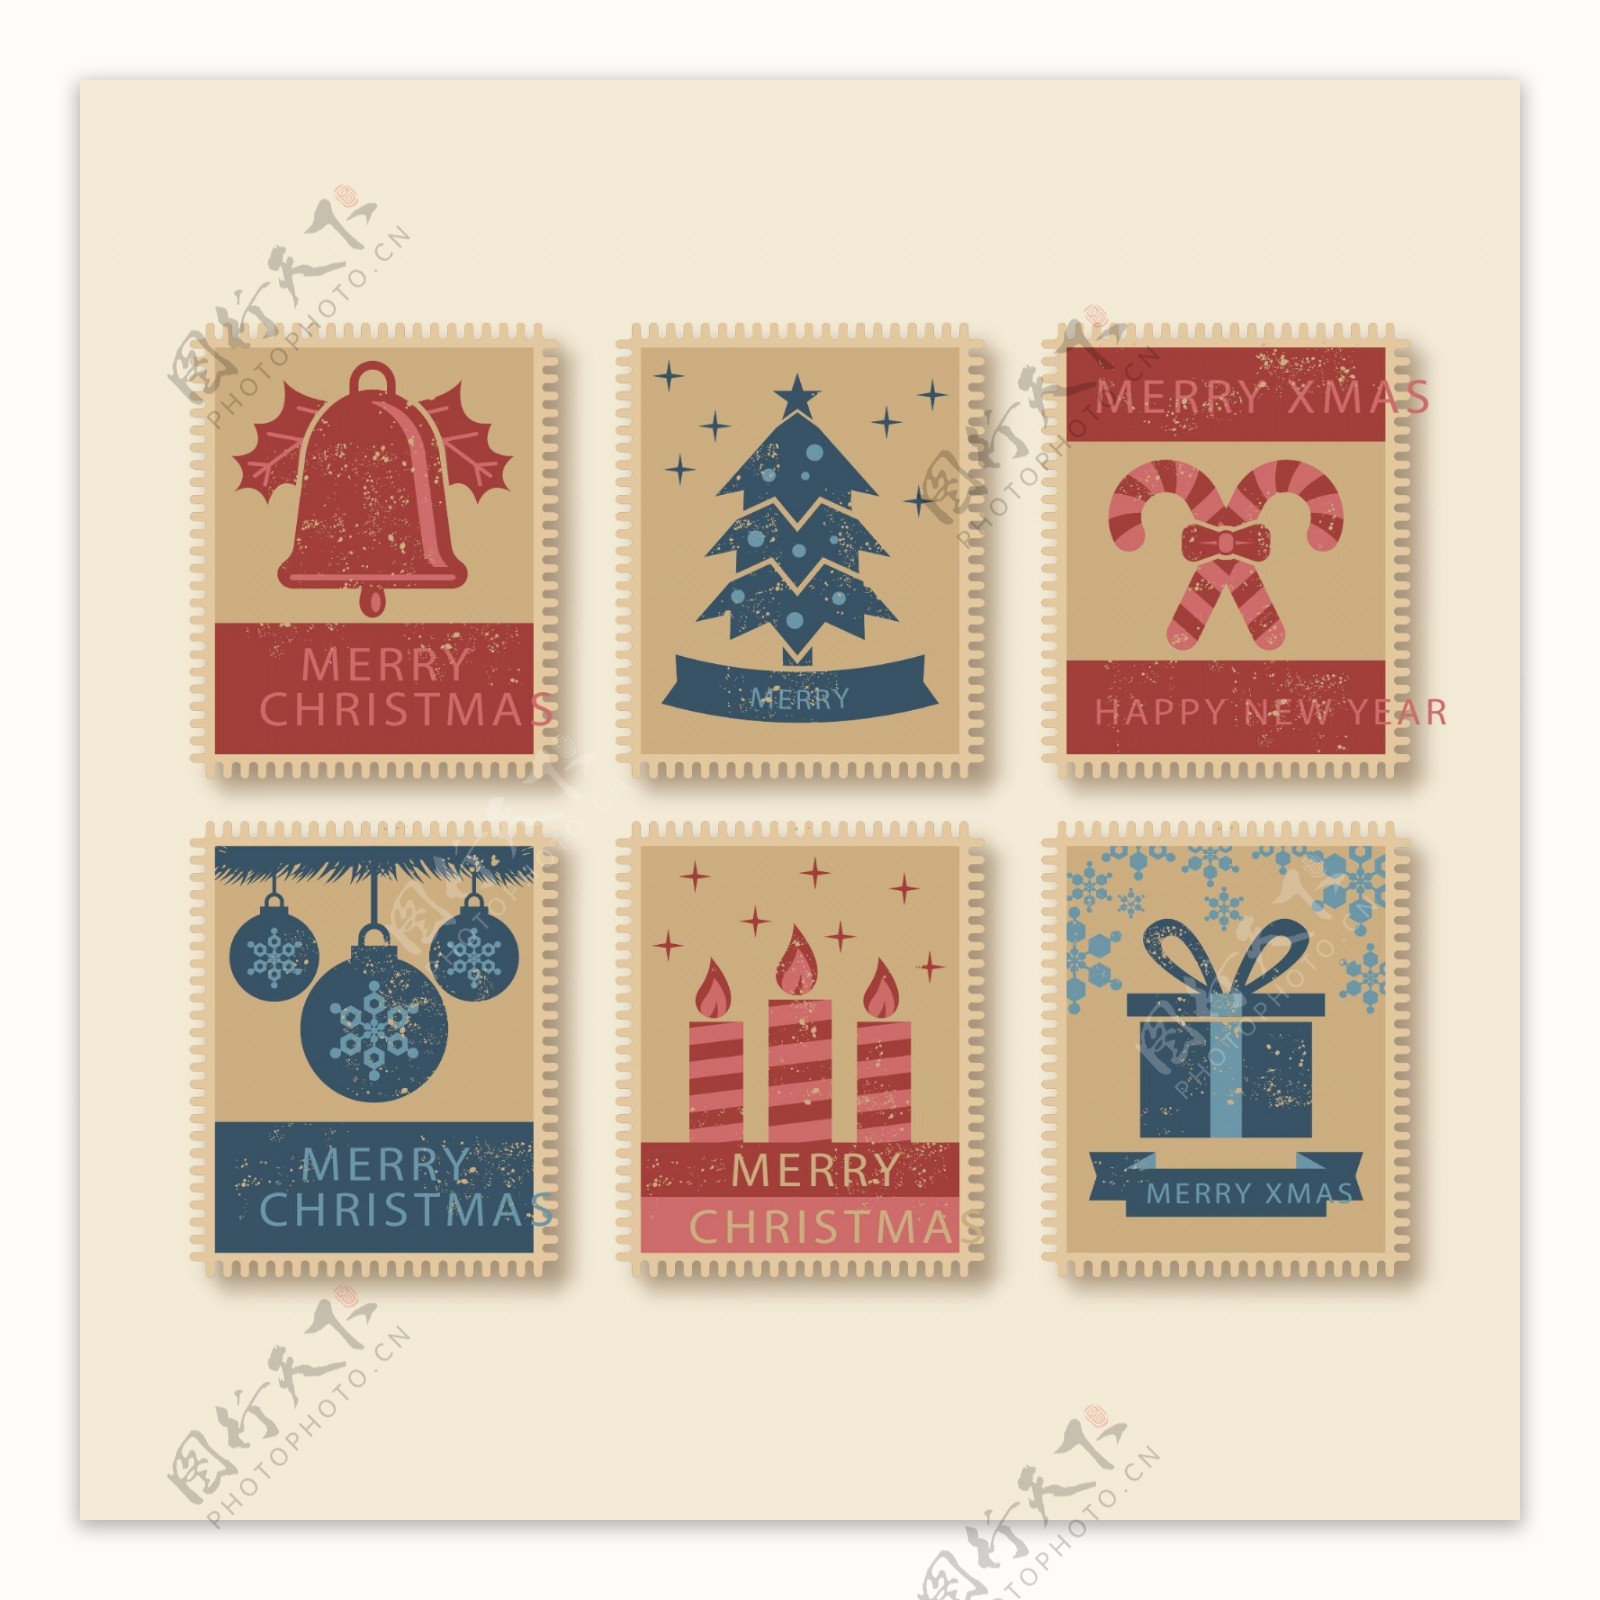 怀旧邮票样式的圣诞标签